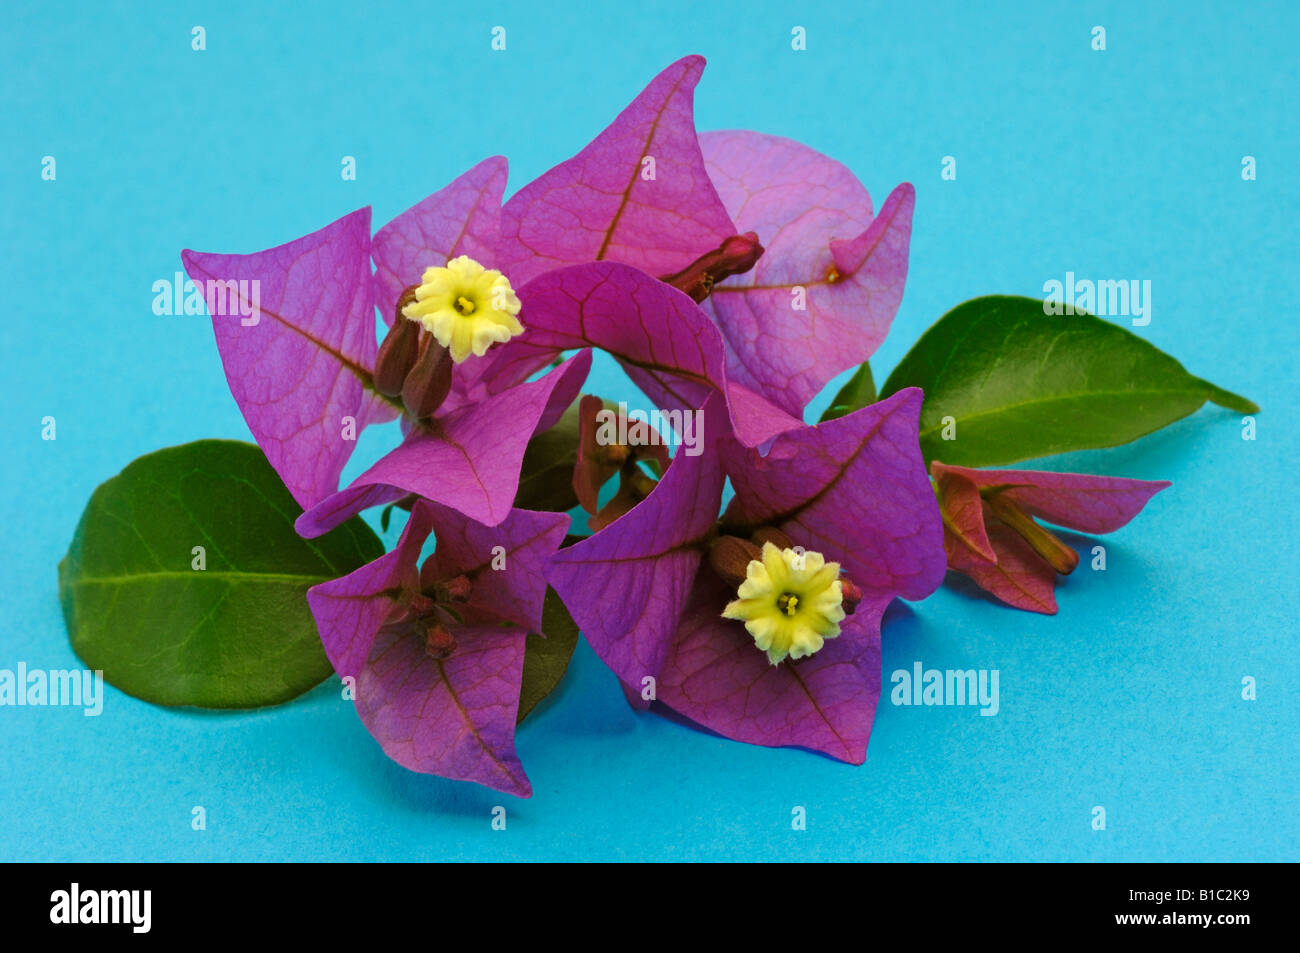 Bougainvillea (Bougainvillea glabra), flowering twig studio picture Stock Photo